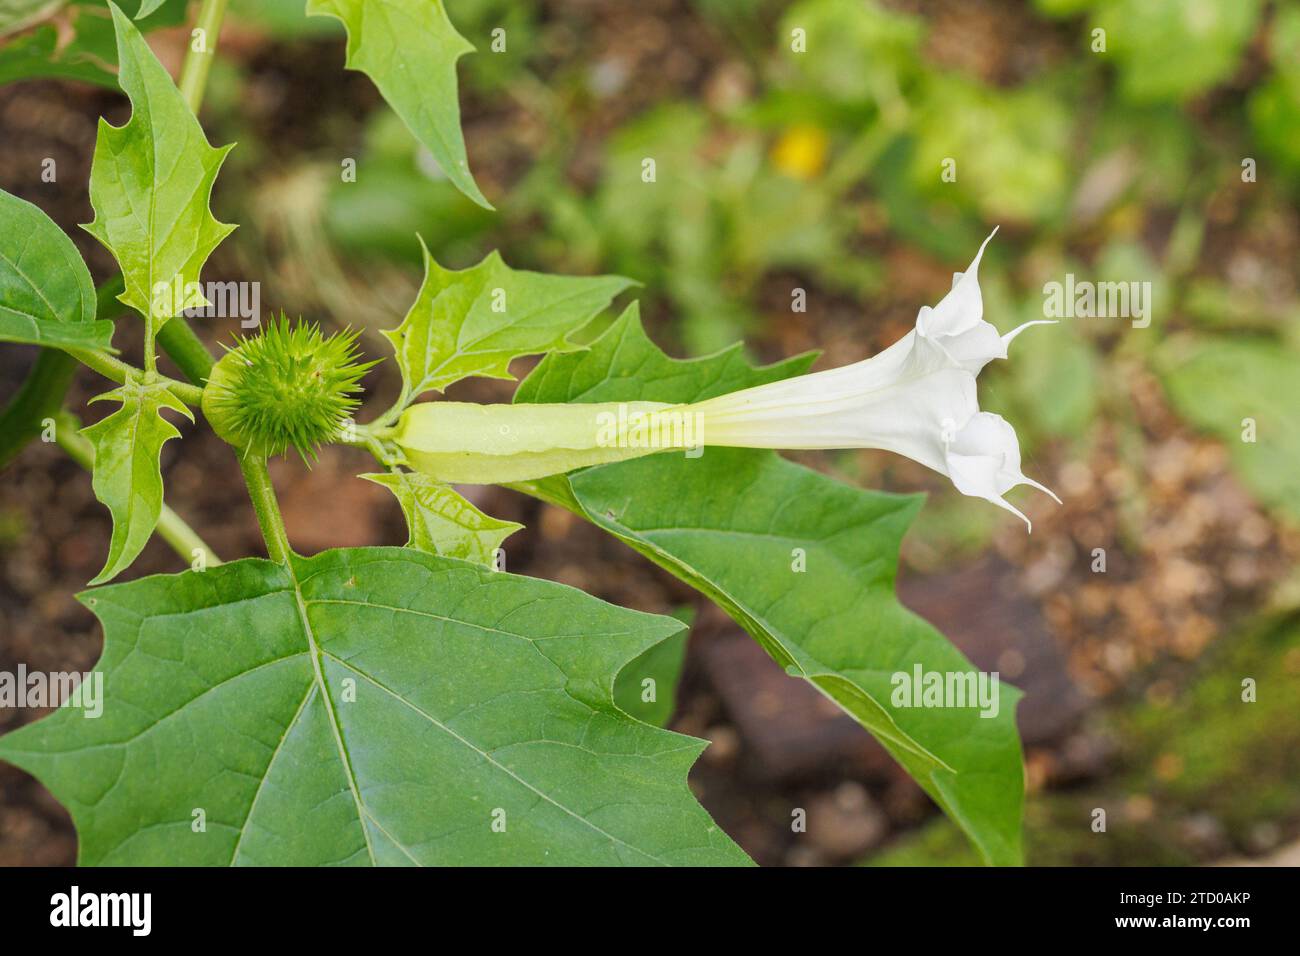 stramonium, jimsonweed, thornapple, jimson weed (Datura stramonium), flower an immature fruit, Germany, Bavaria Stock Photo